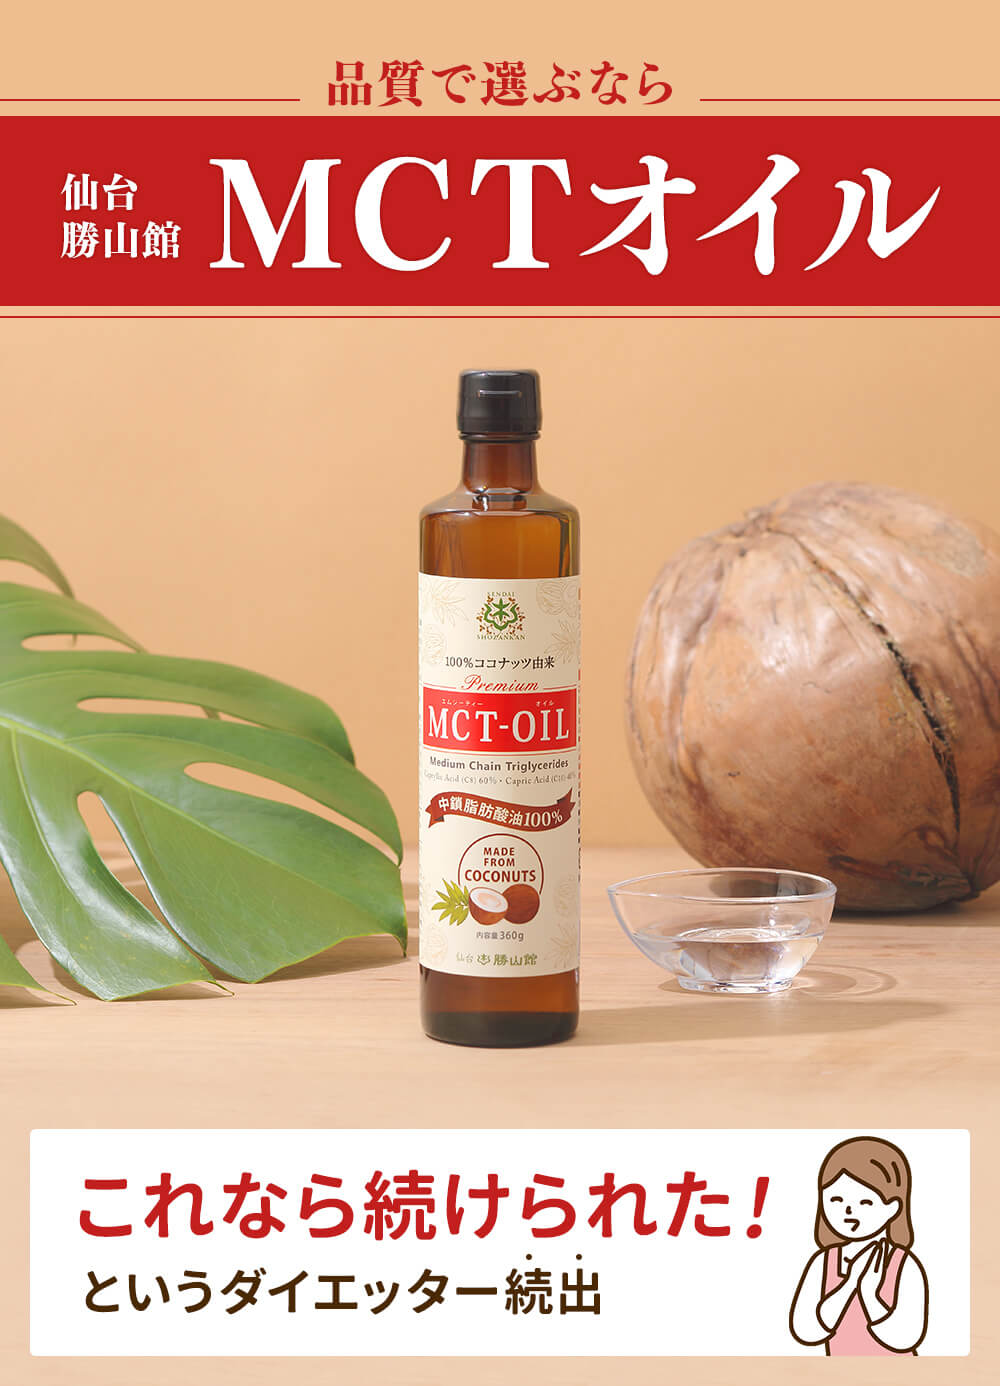 仙台勝山館MCTオイルについて。MCTオイルとは、中鎖脂肪酸のこと。